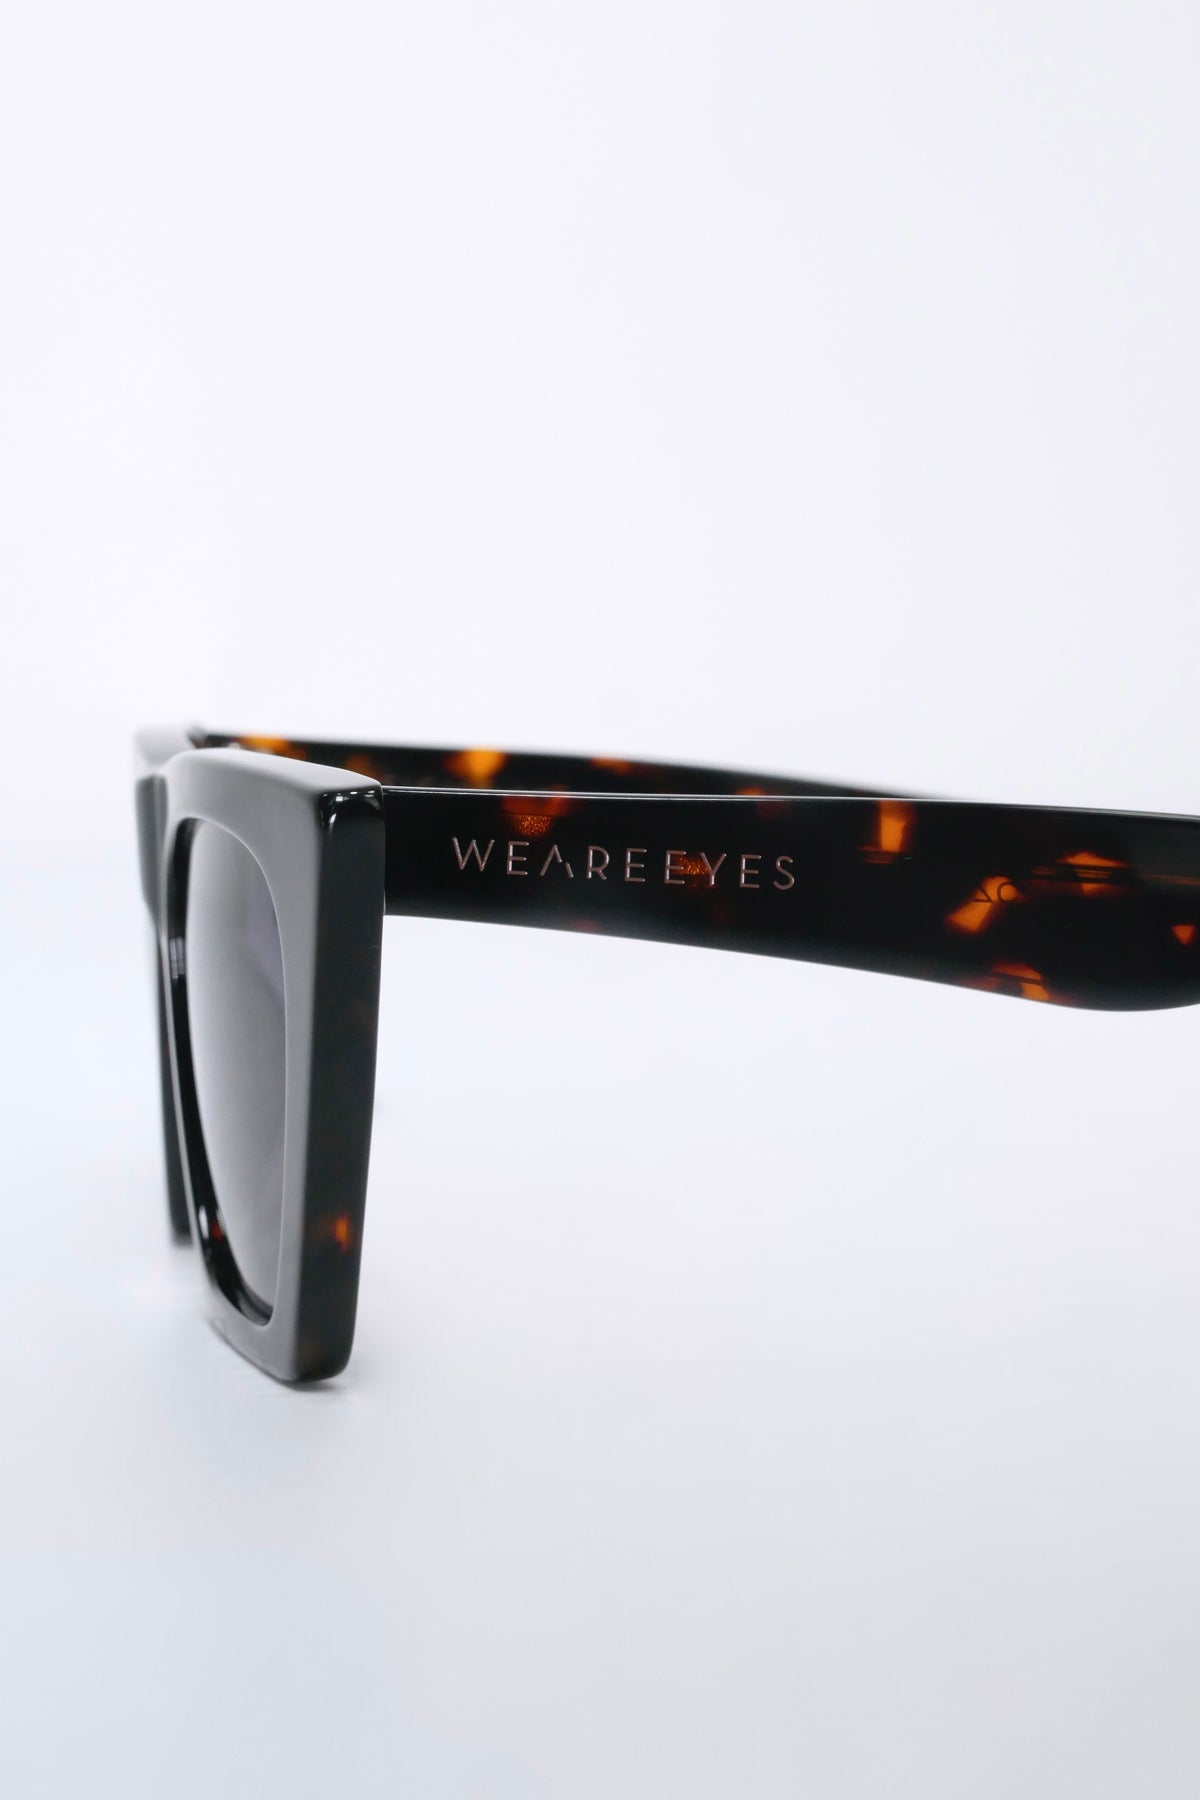 WEAREEYES Sigma 2.0 Sunglasses - Crystal Tortoise